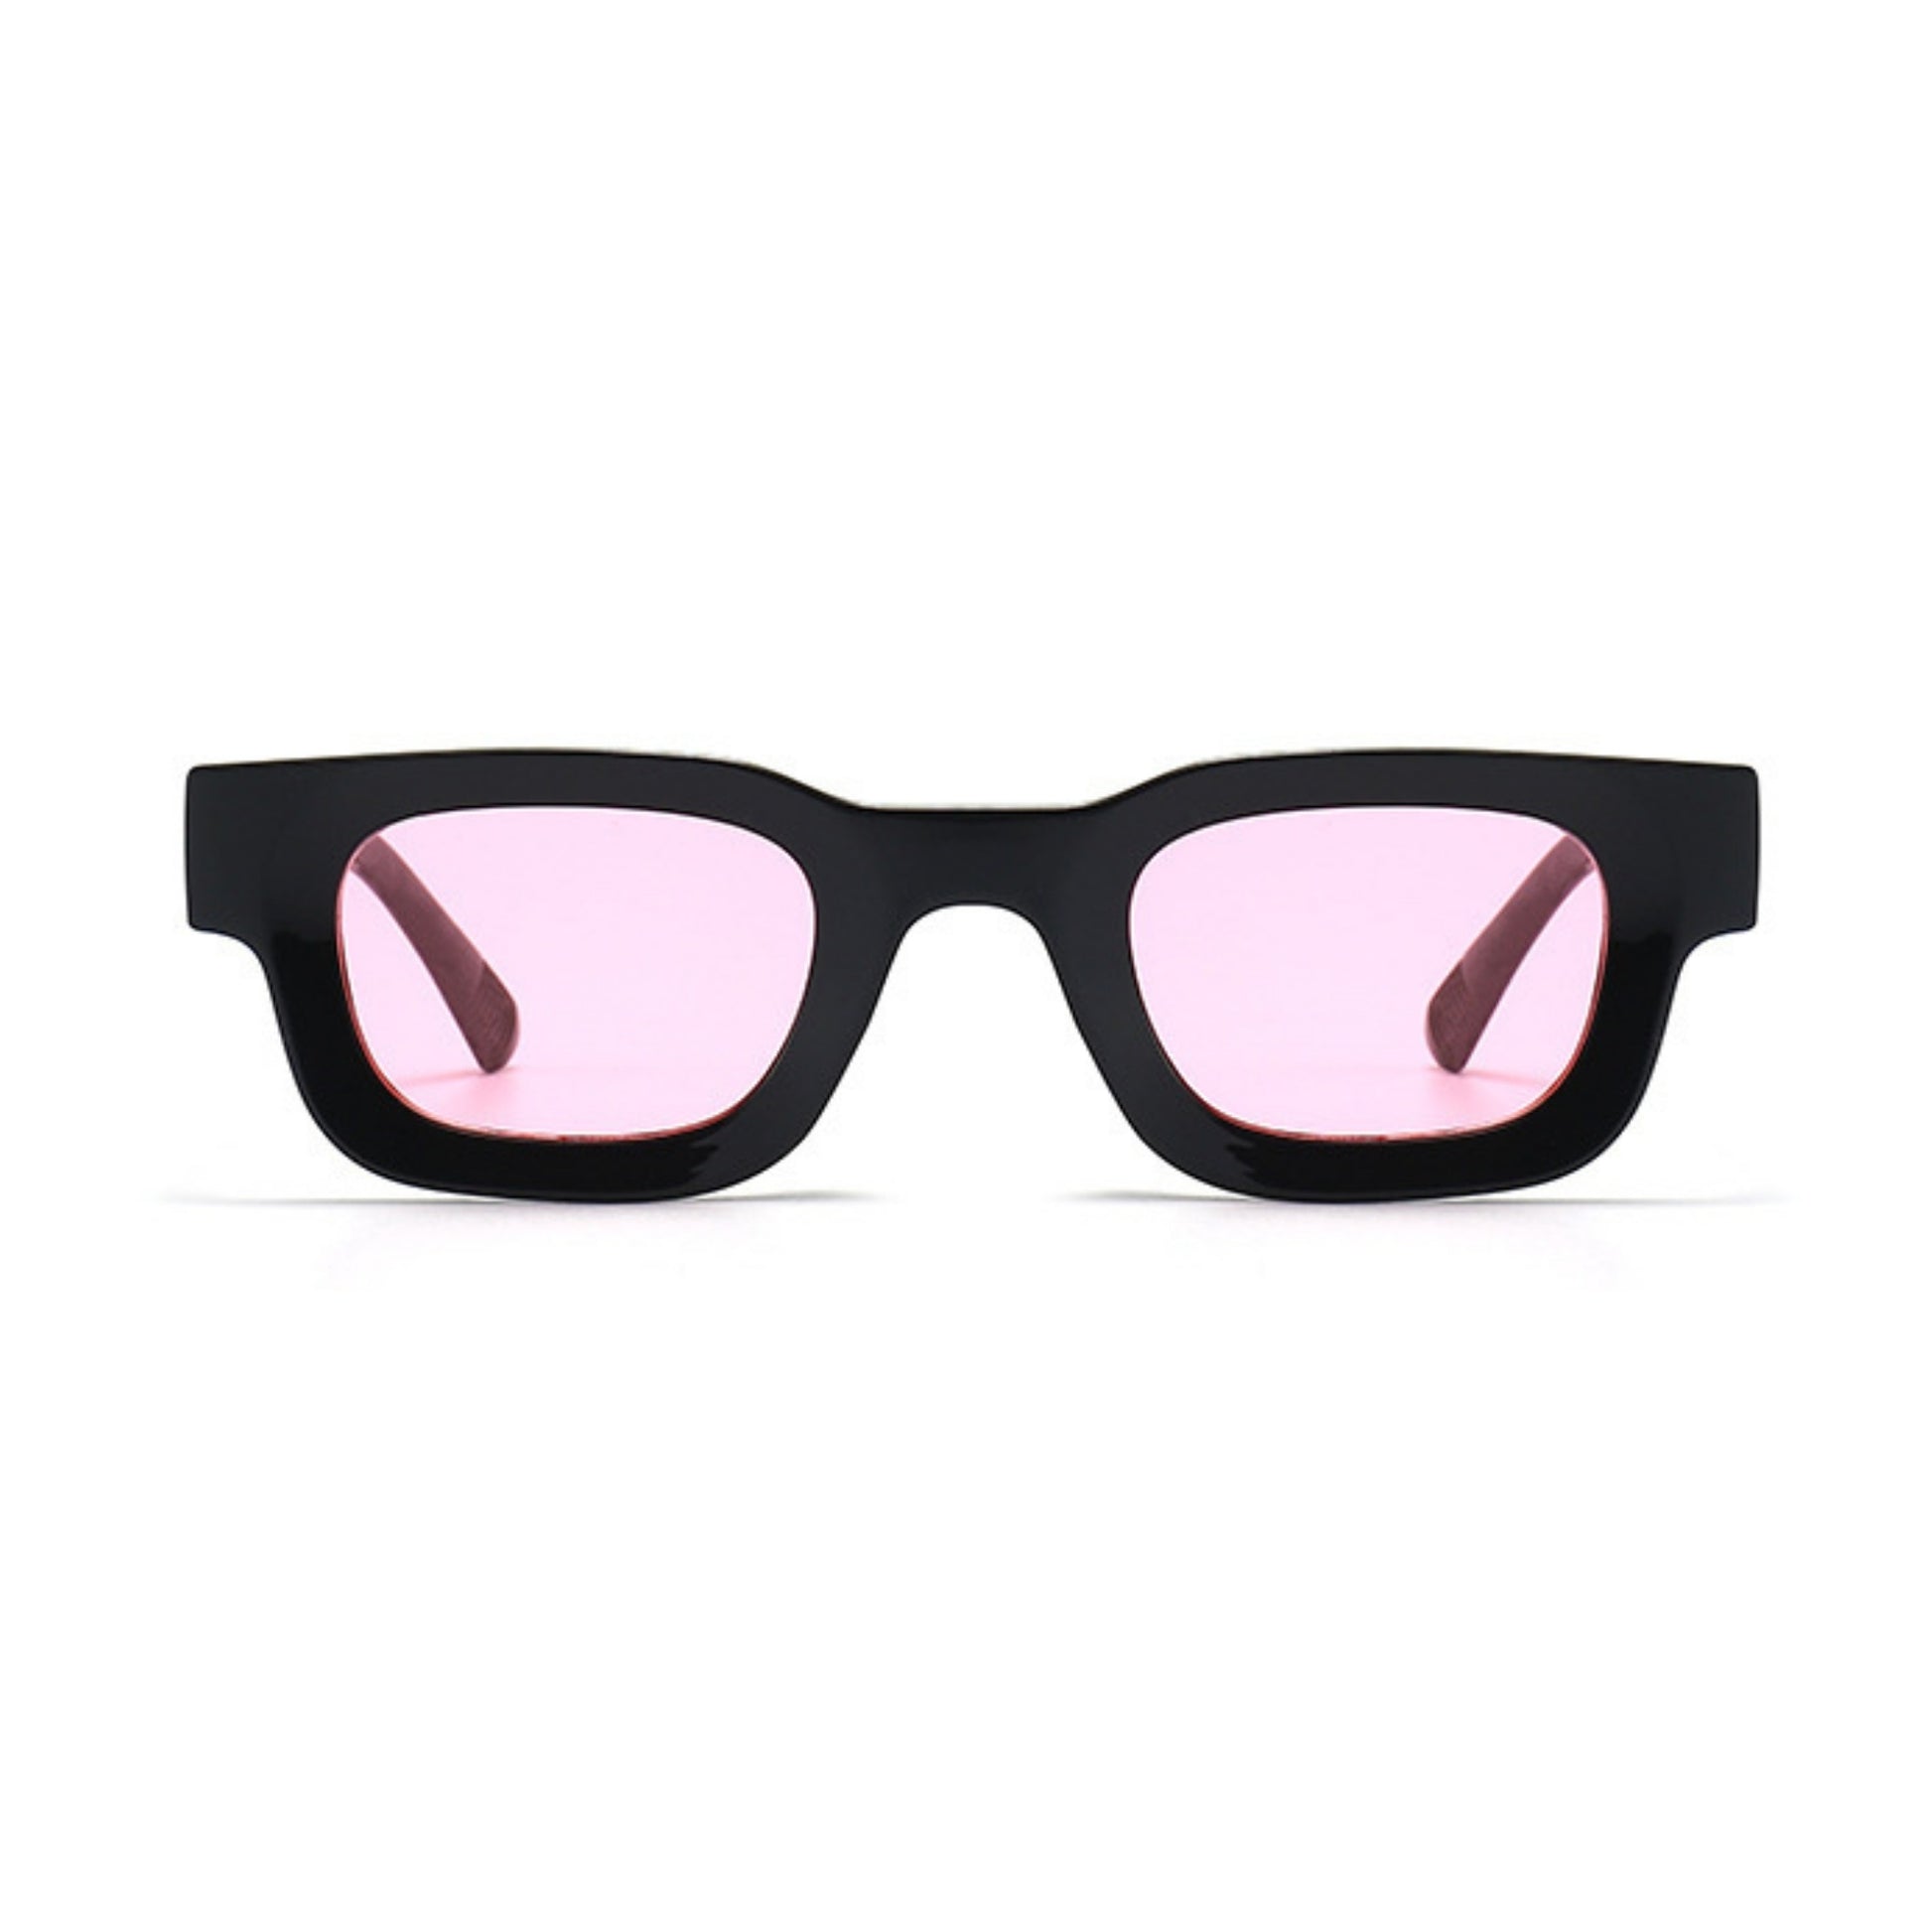 Τετράγωνα Γυαλιά ηλίου Taf από την Exposure Sunglasses με προστασία UV400 με μαύρο σκελετό και ροζ φακό.